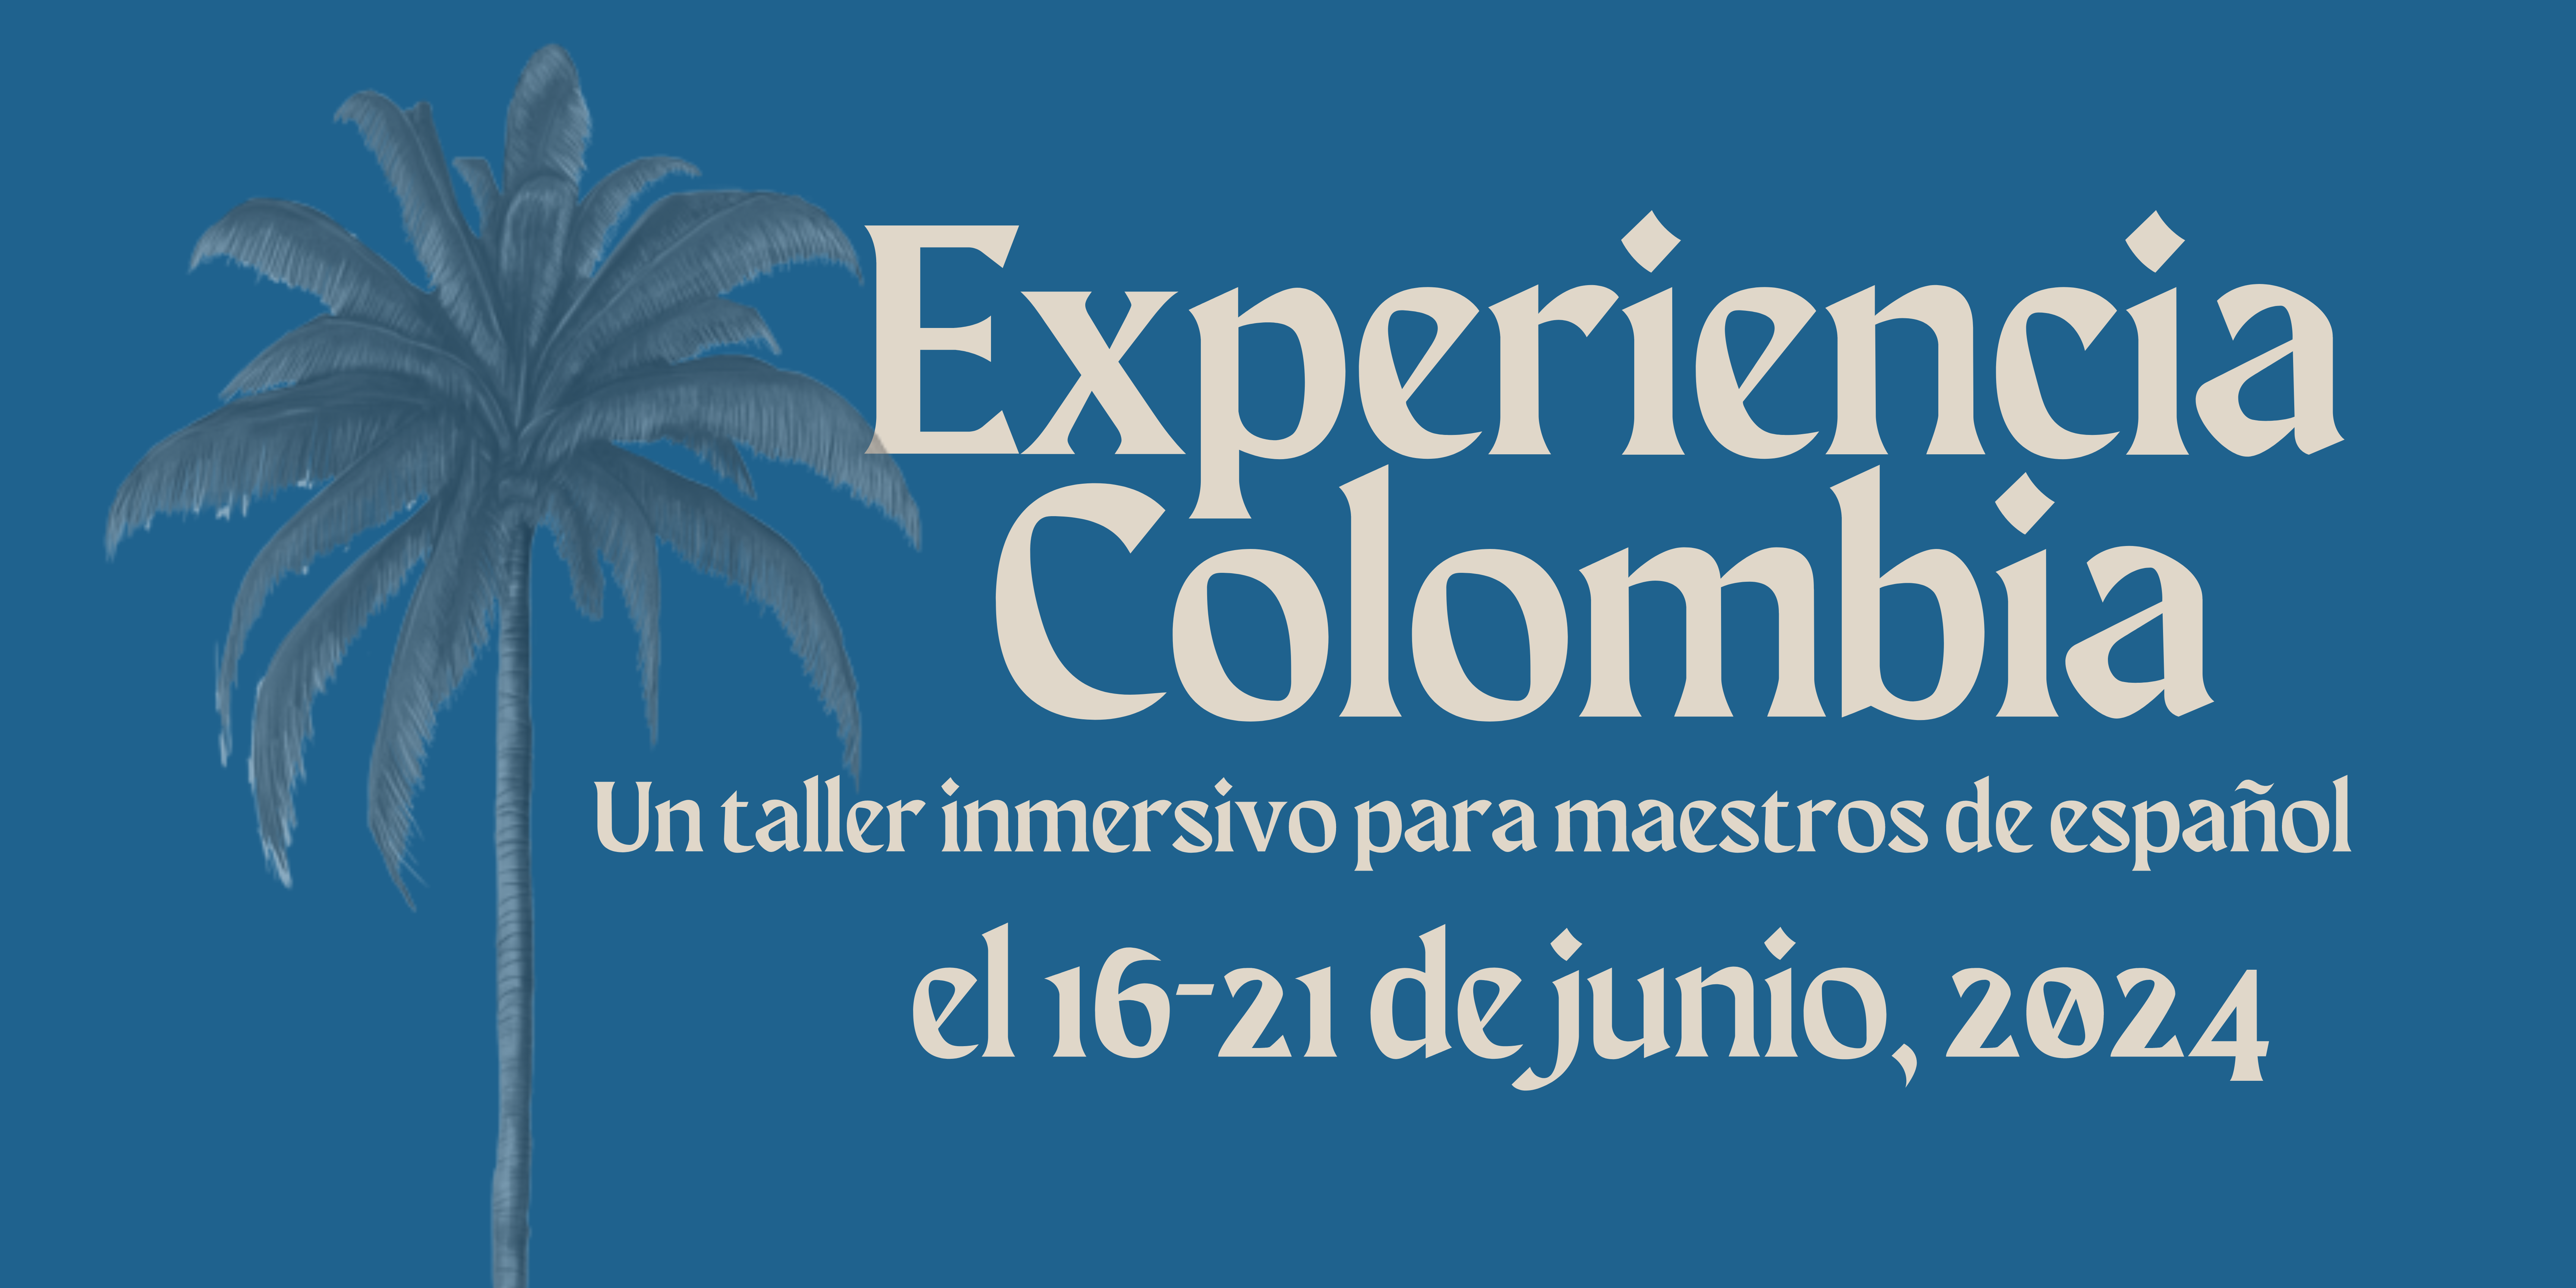 Un taller inmersivo para maestros de español www.experienciacolombia.com